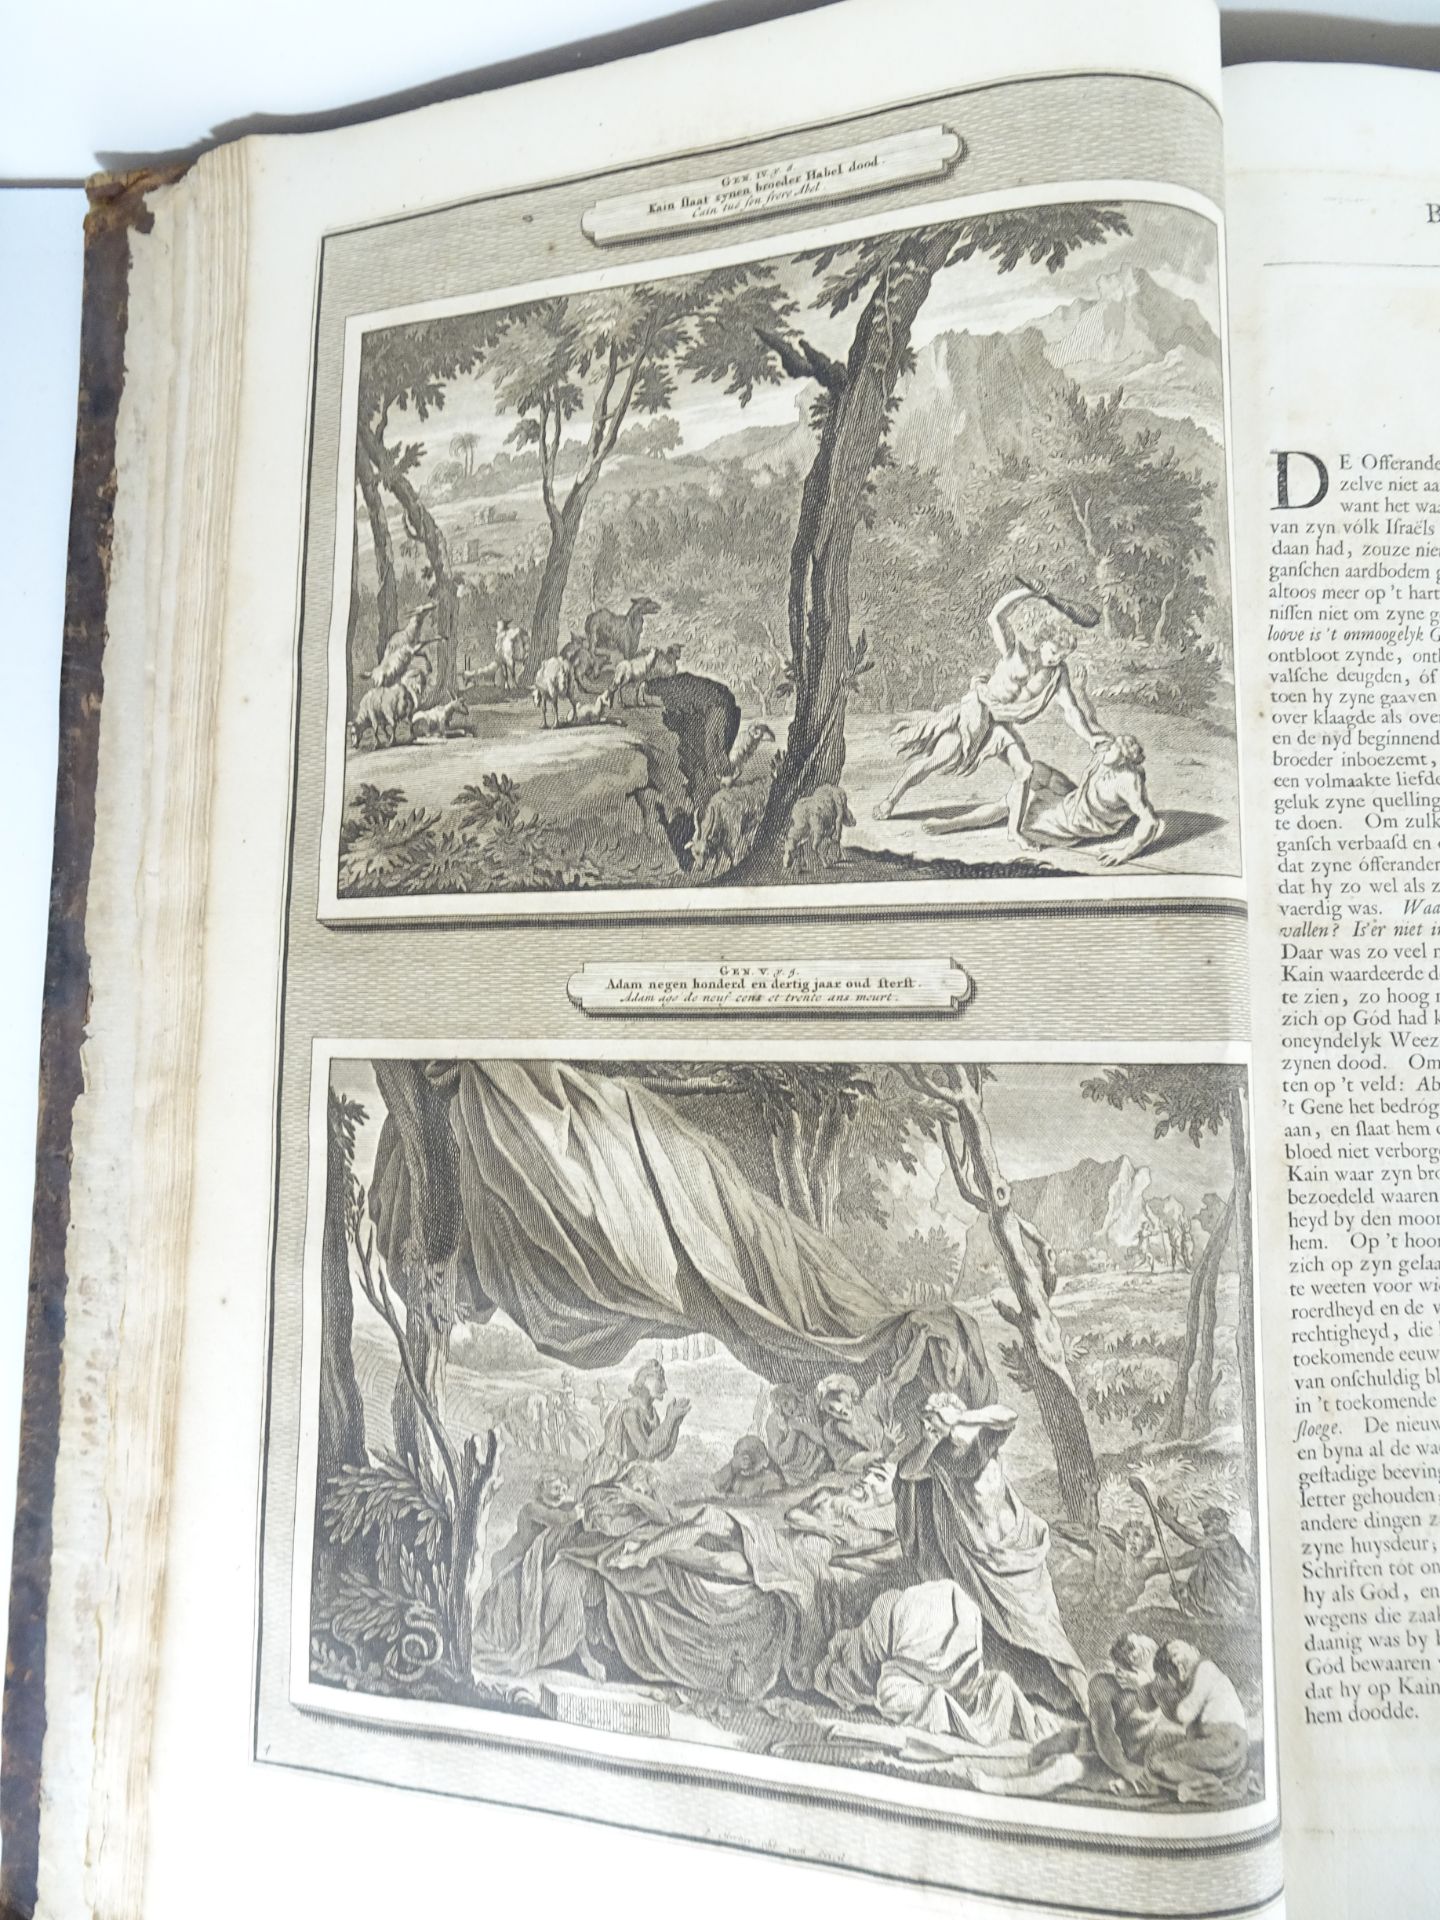 |Bible| Mortier Pieter, "Historie des Ouden en Nieuwen Testaments…", 1700 - Image 6 of 16